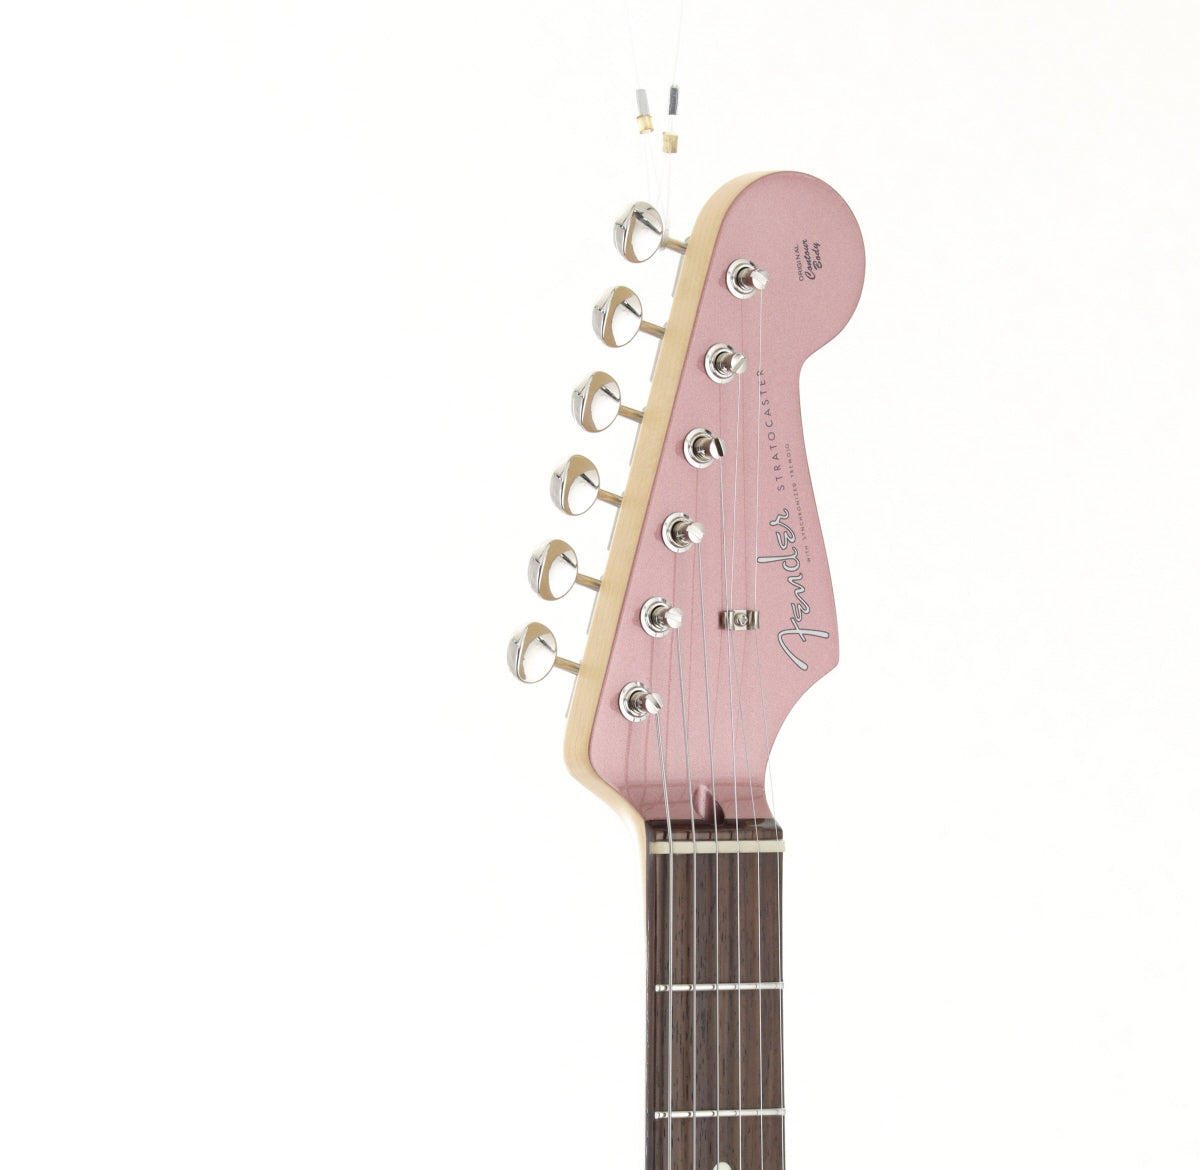 [SN JD23014682] USED Fender / FSR Hybrid II Stratocaster Burgundy Mist MH [03]